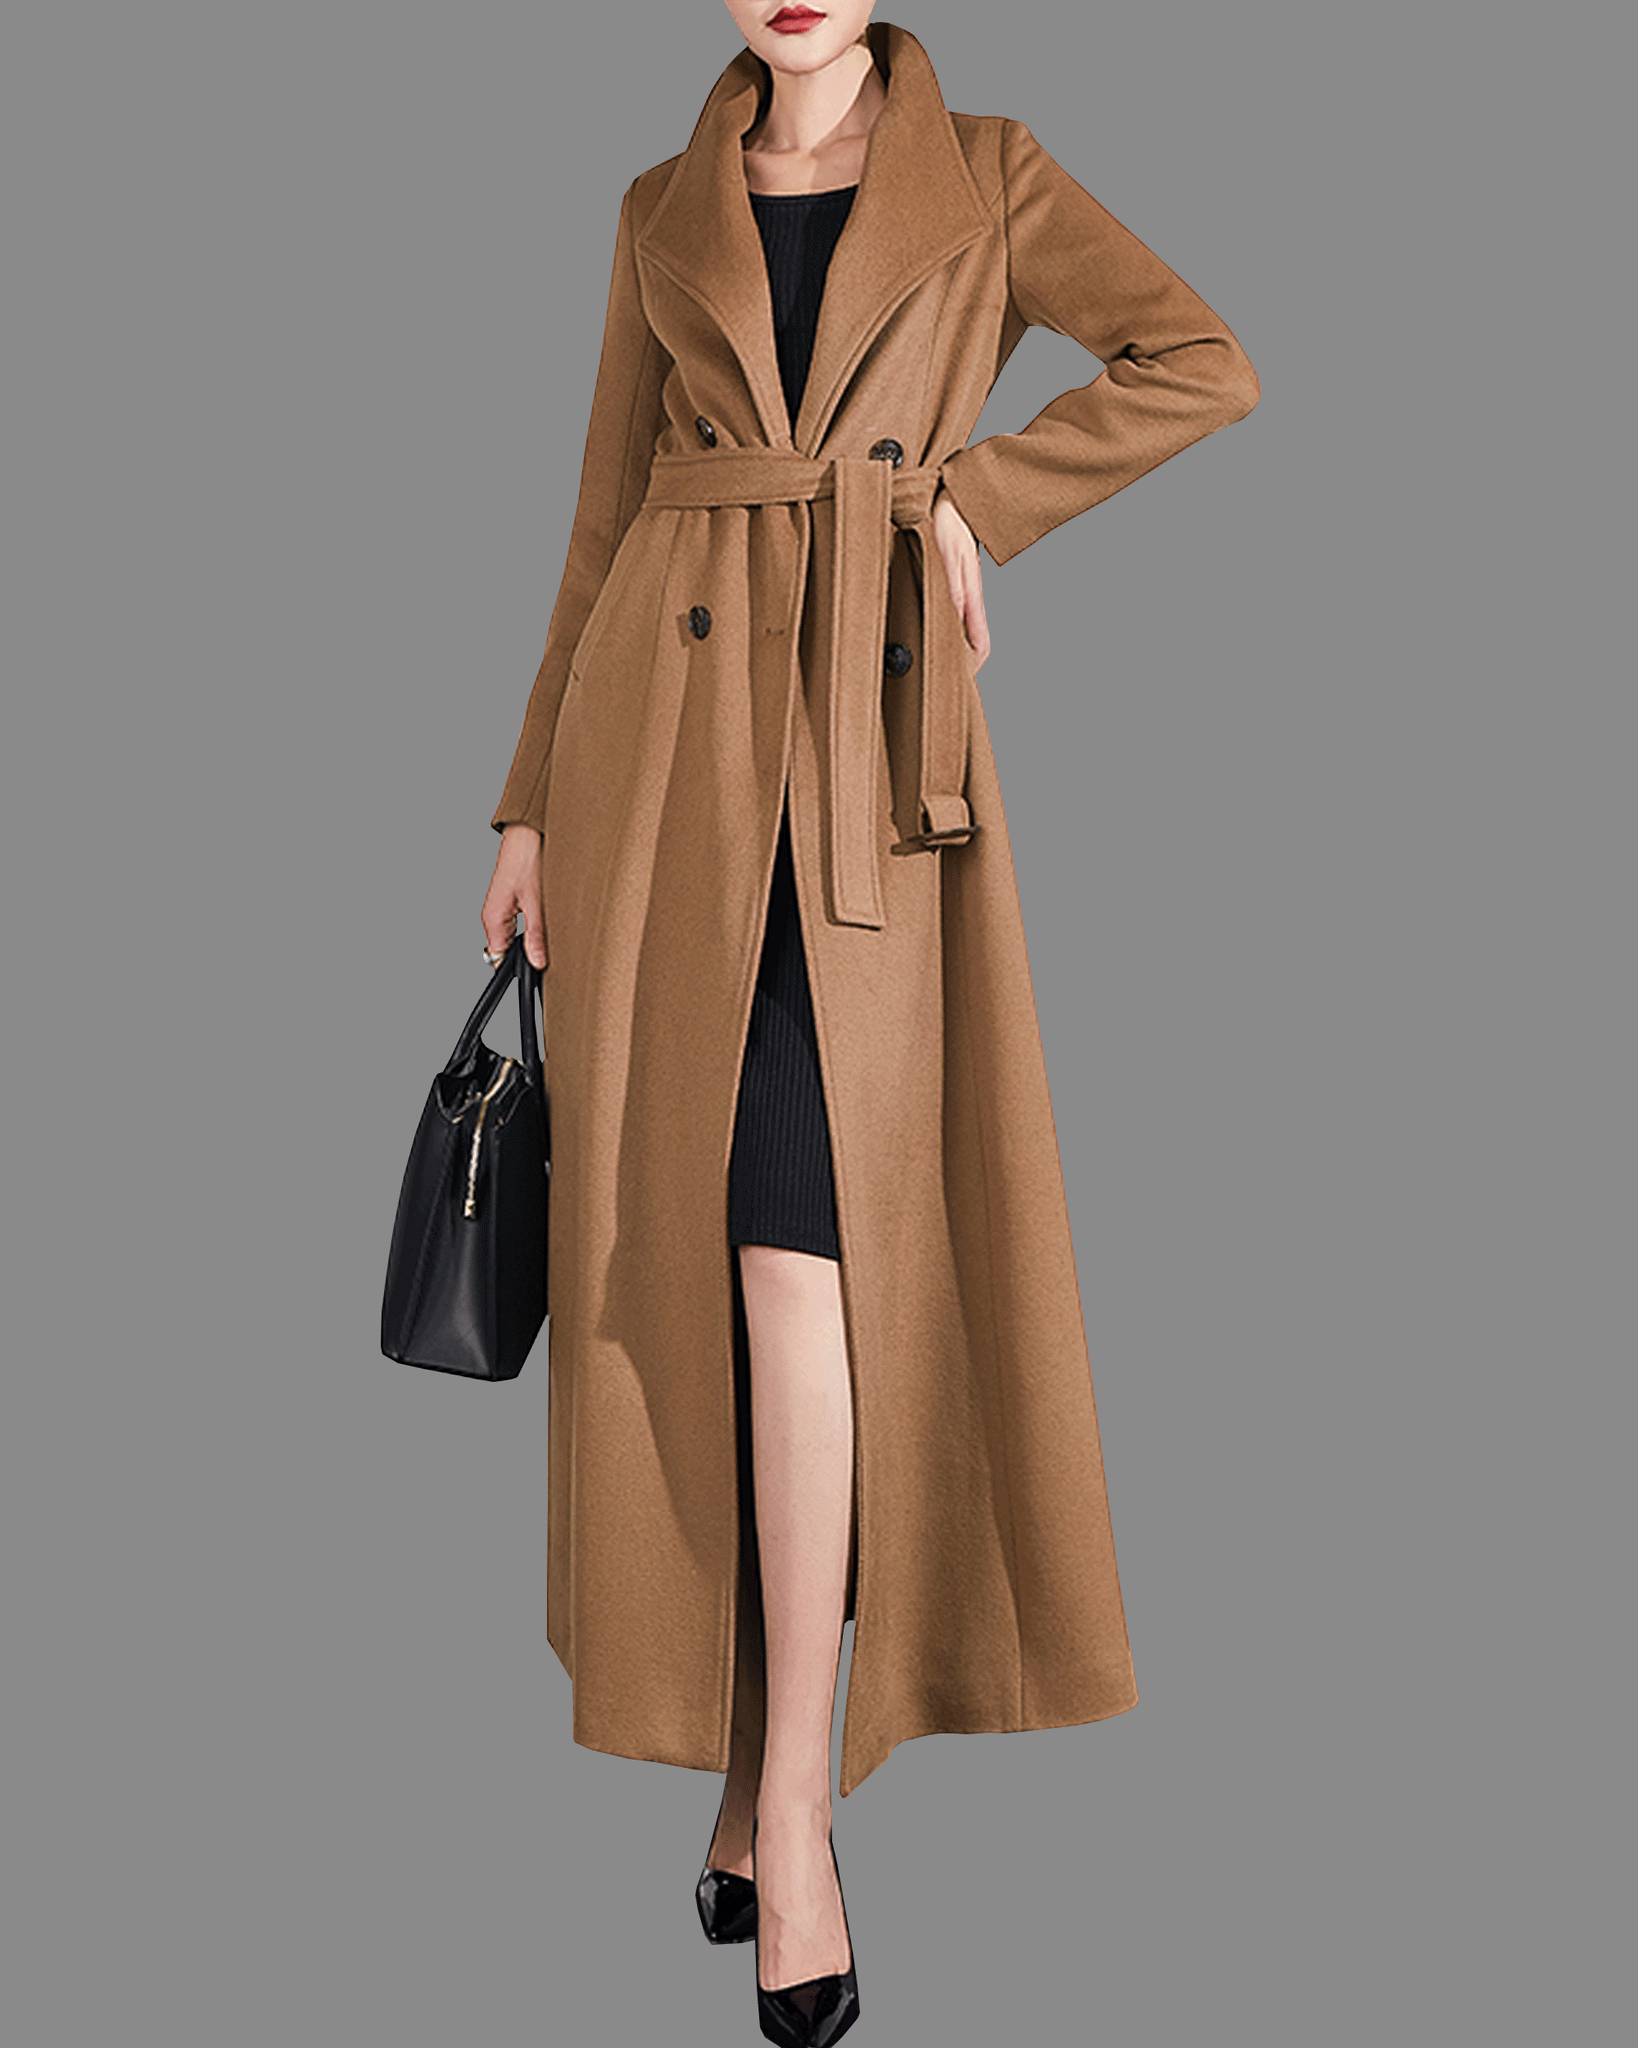 Long Coat For Girl Deals | bellvalefarms.com